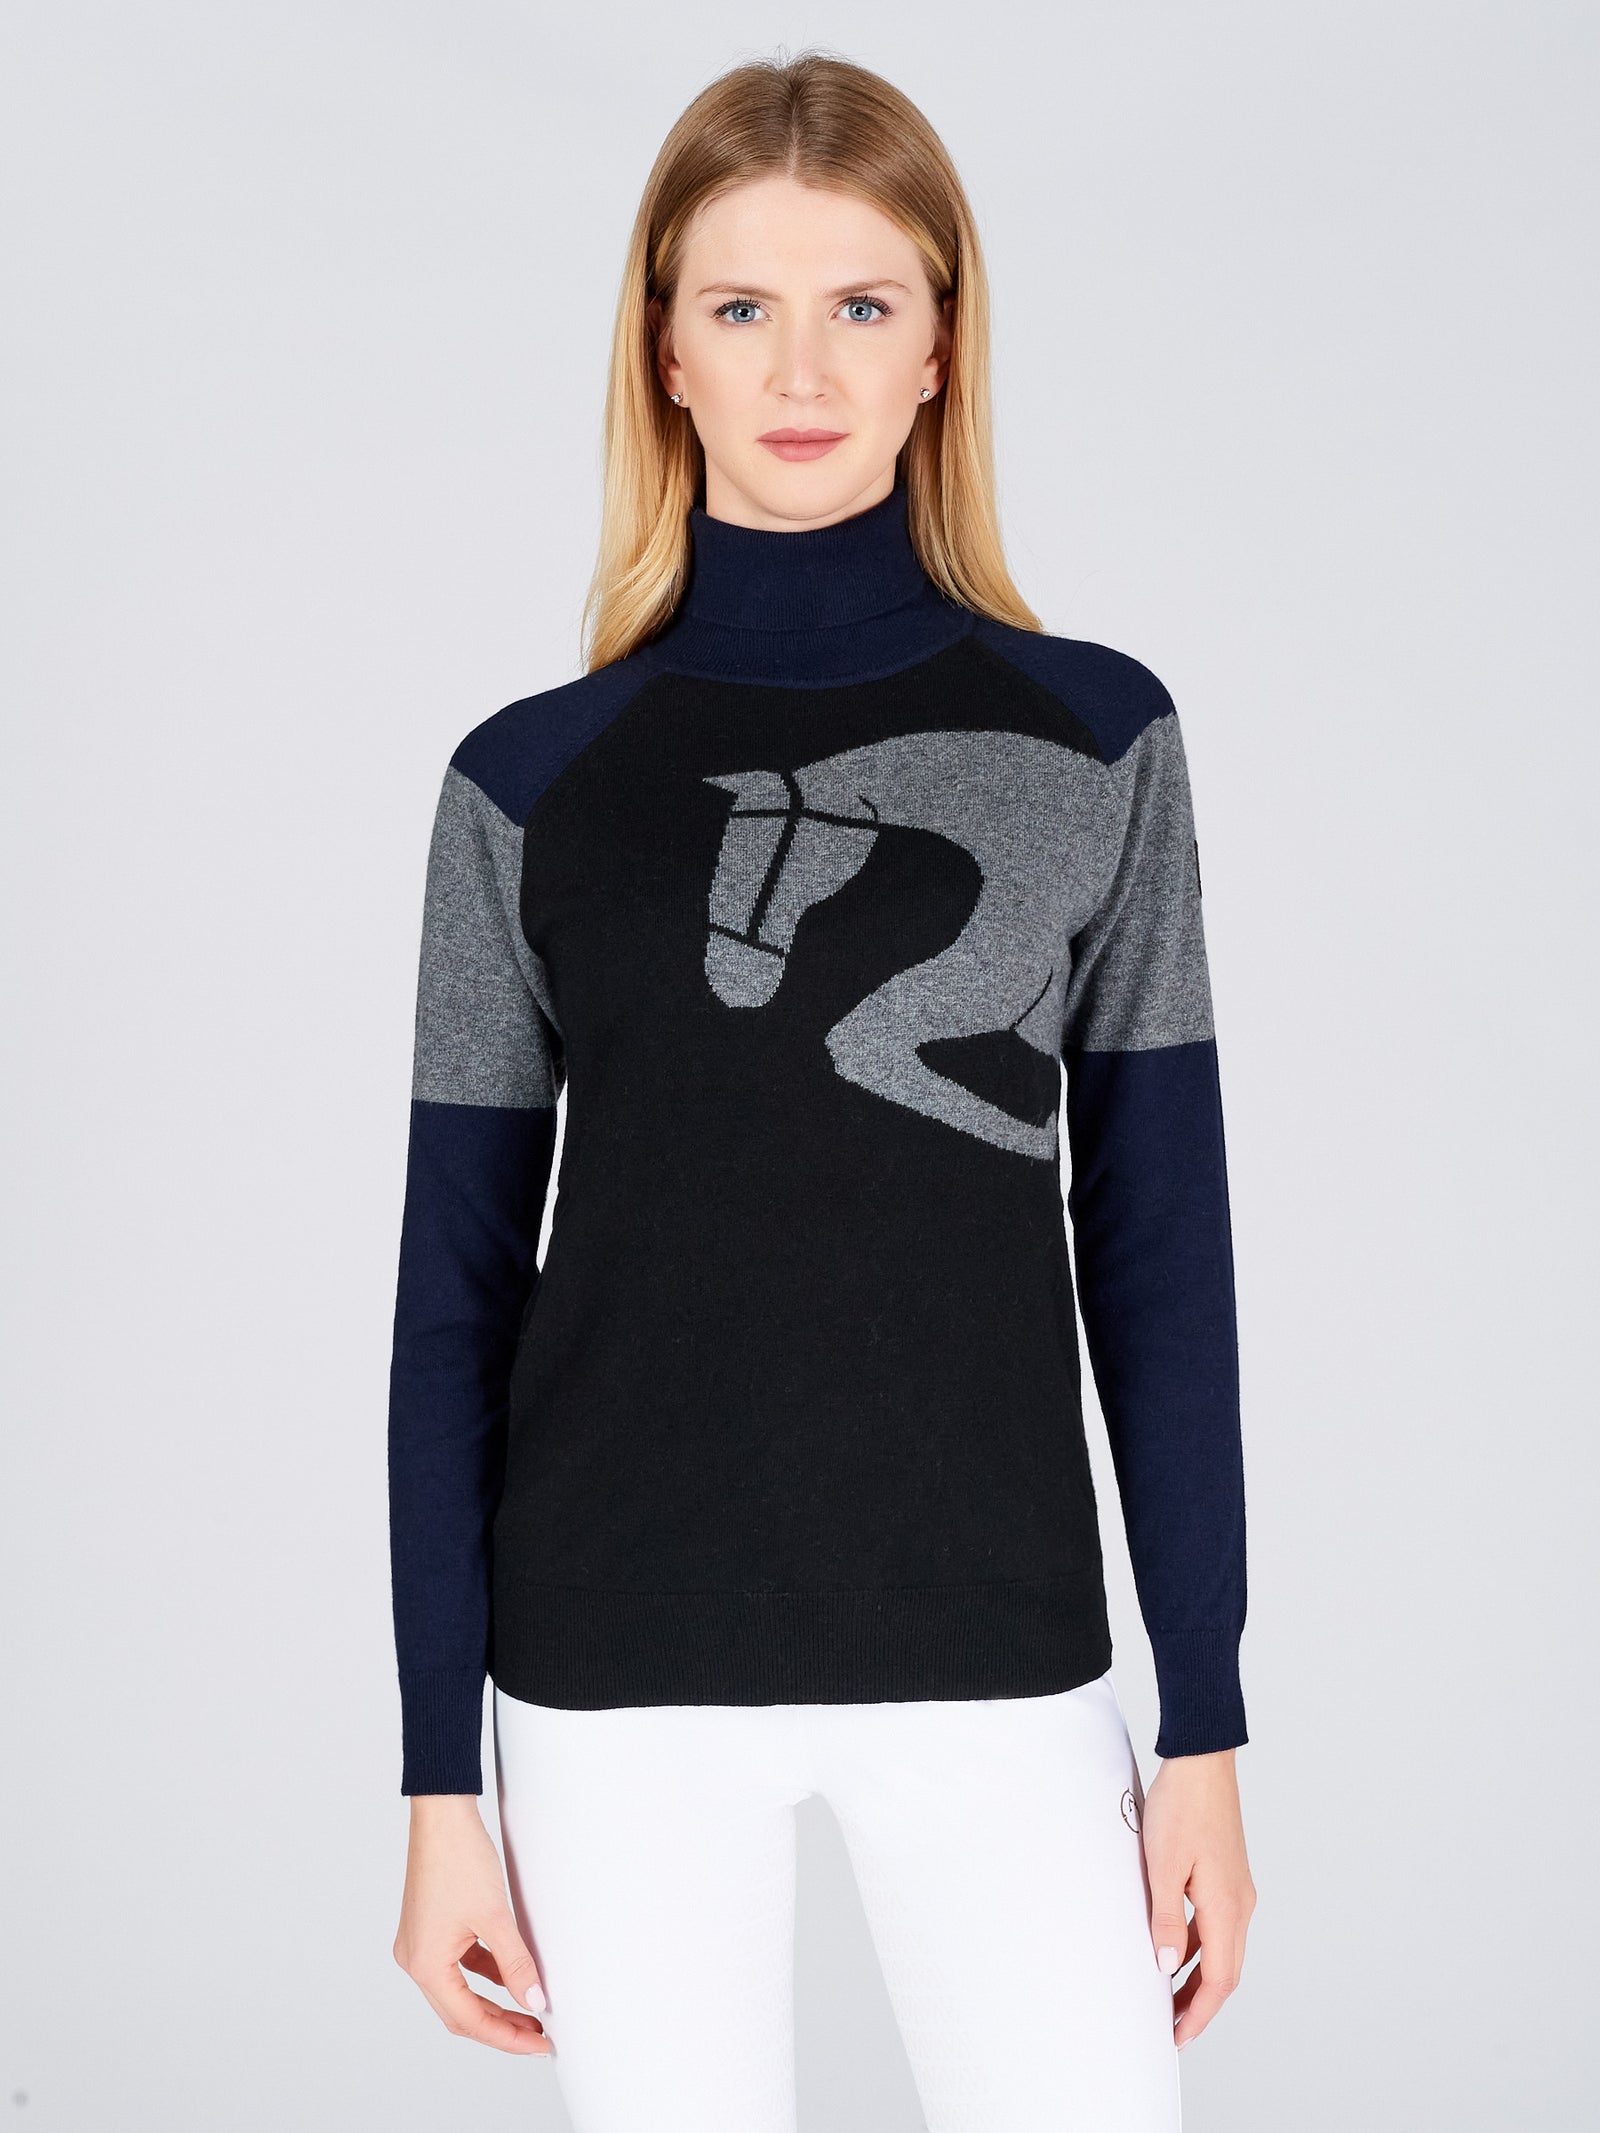 Vestrum Demonte Women's Turtleneck Sweater